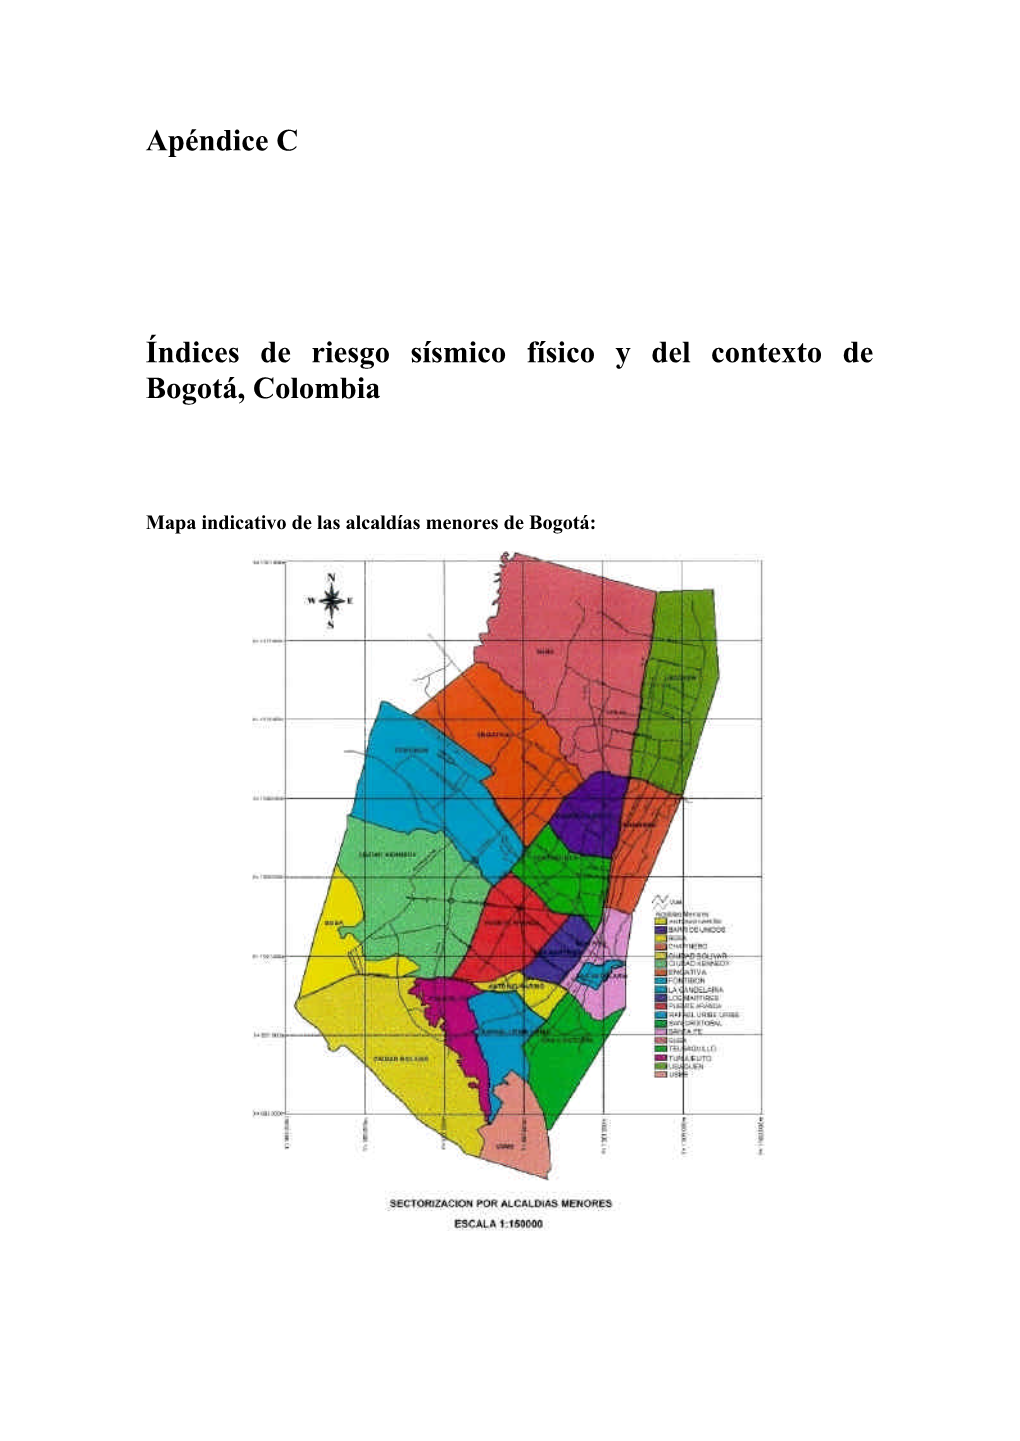 Apéndice C Índices De Riesgo Sísmico Físico Y Del Contexto De Bogotá